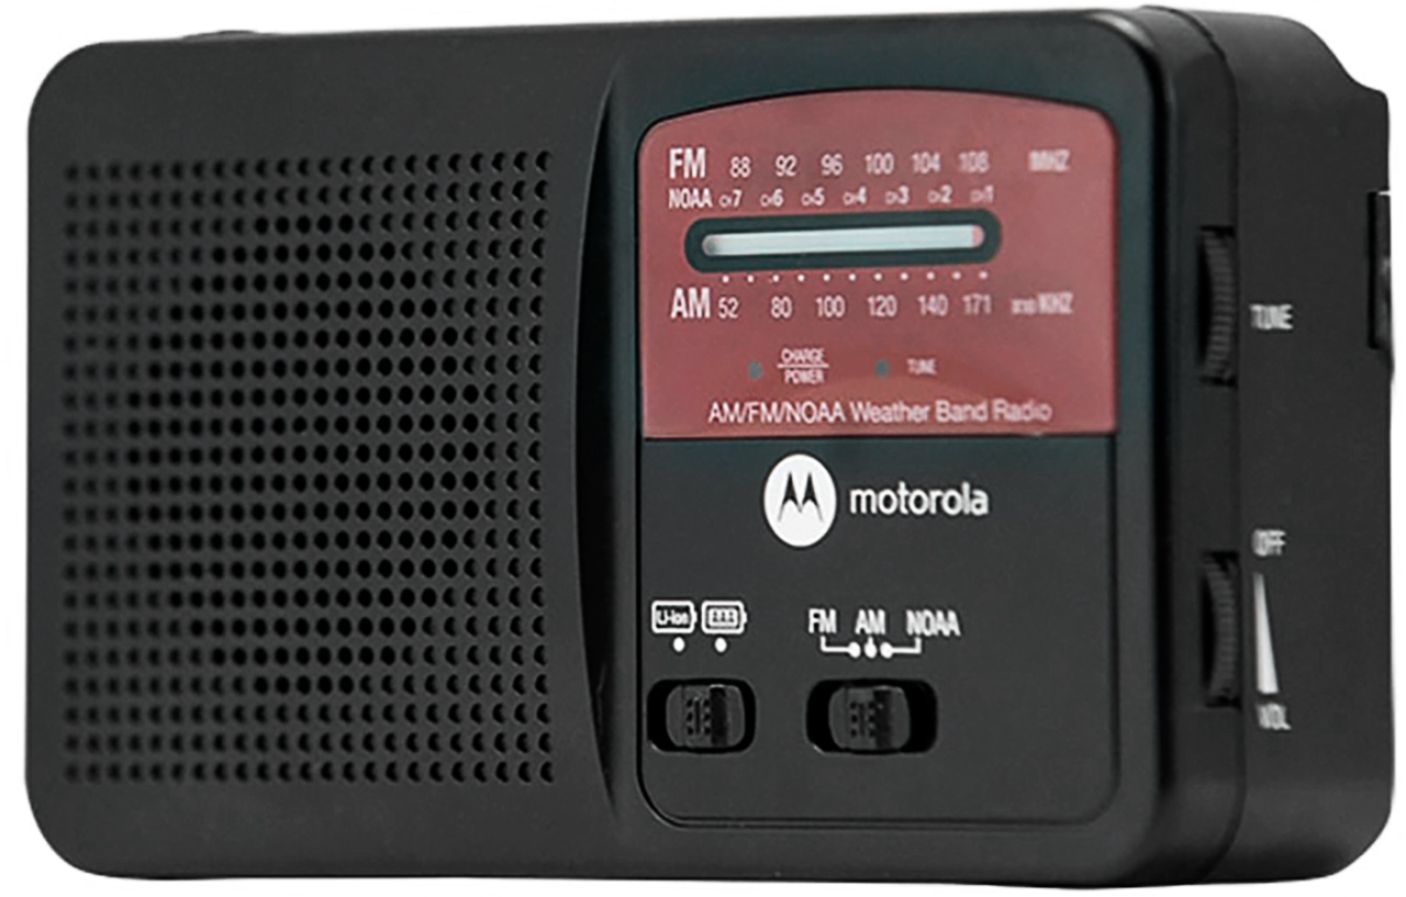 Retirada Pensar en el futuro miel Best Buy: Motorola Portable AM/FM/Weather Radio Black MWR800